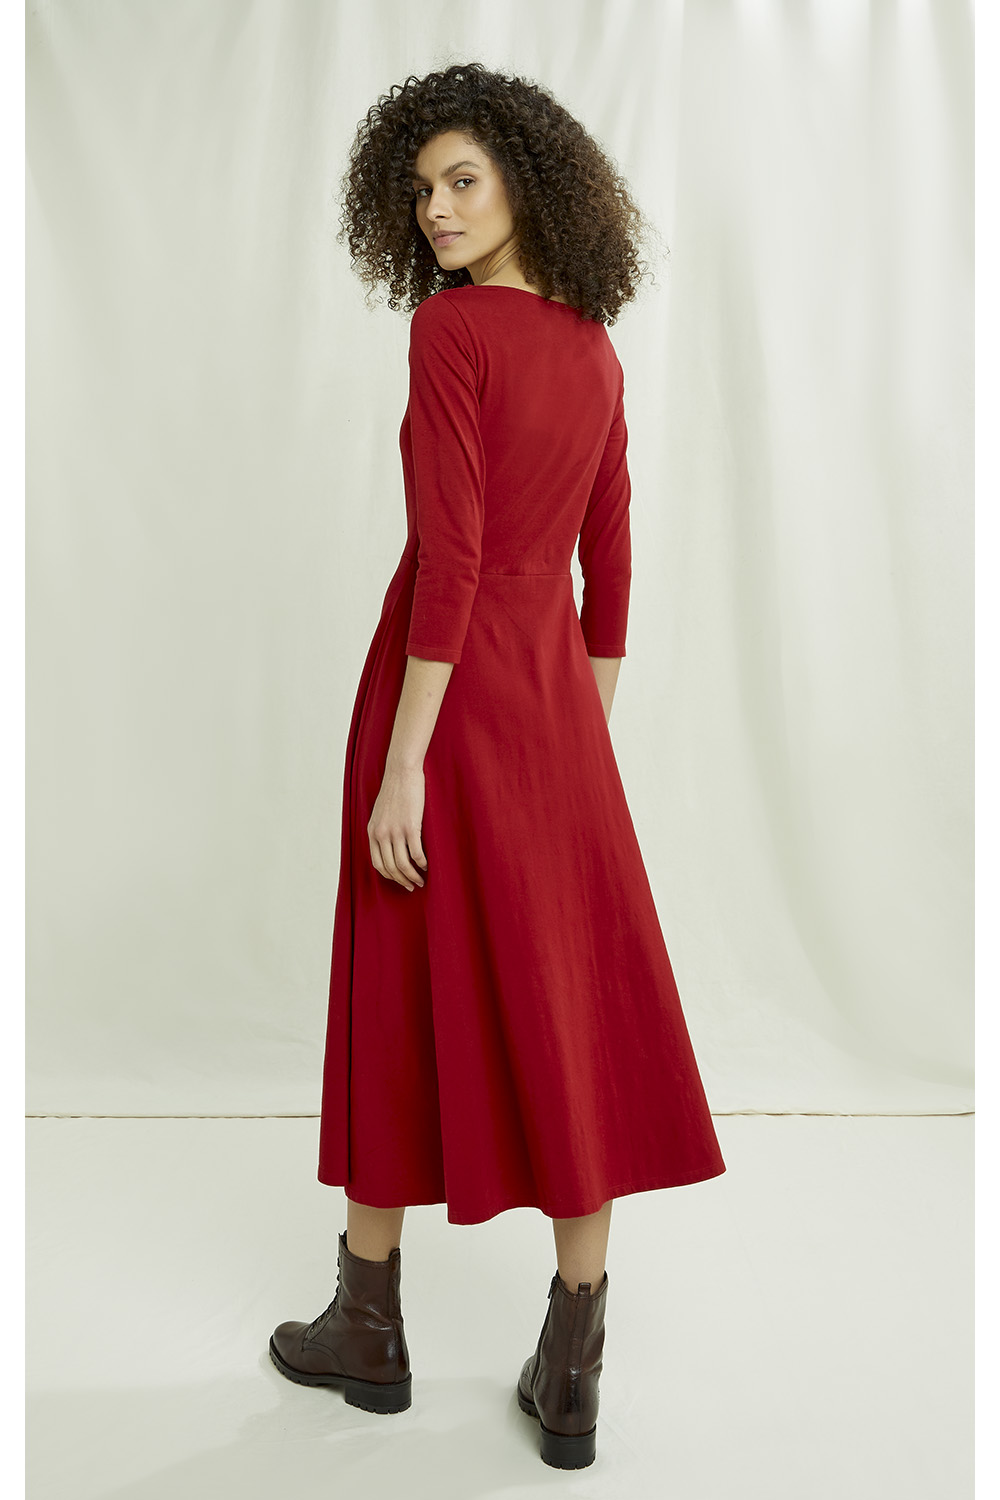 valencia-dress-in-red-0e653743780f